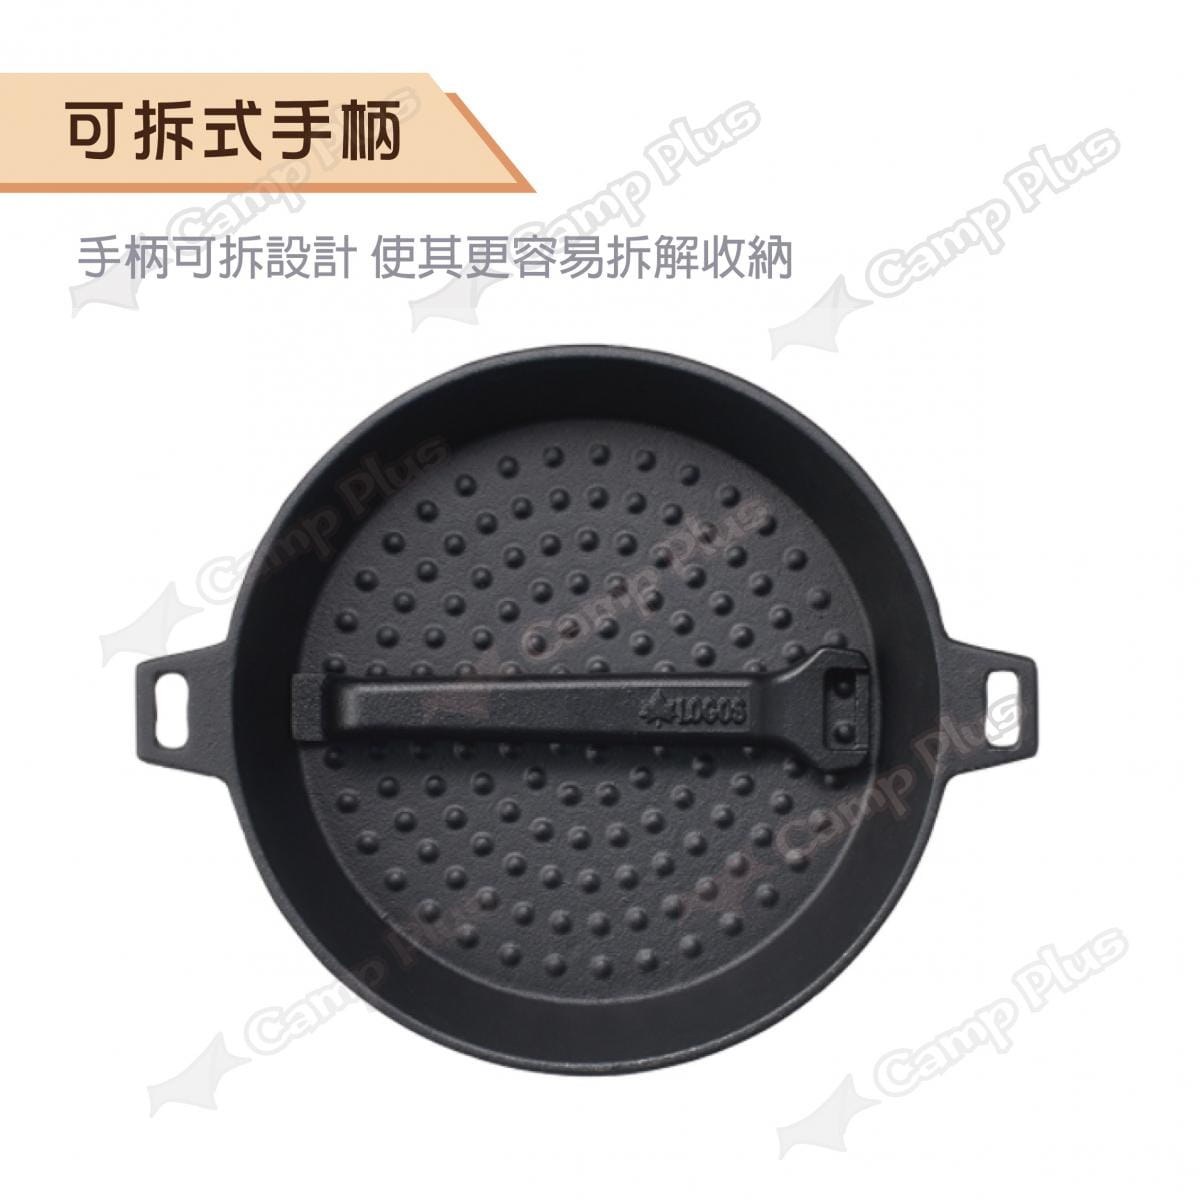 【日本LOGOS】 可合體鑄鐵煎鍋M(22cm)_LG81062235 (悠遊戶外) 1